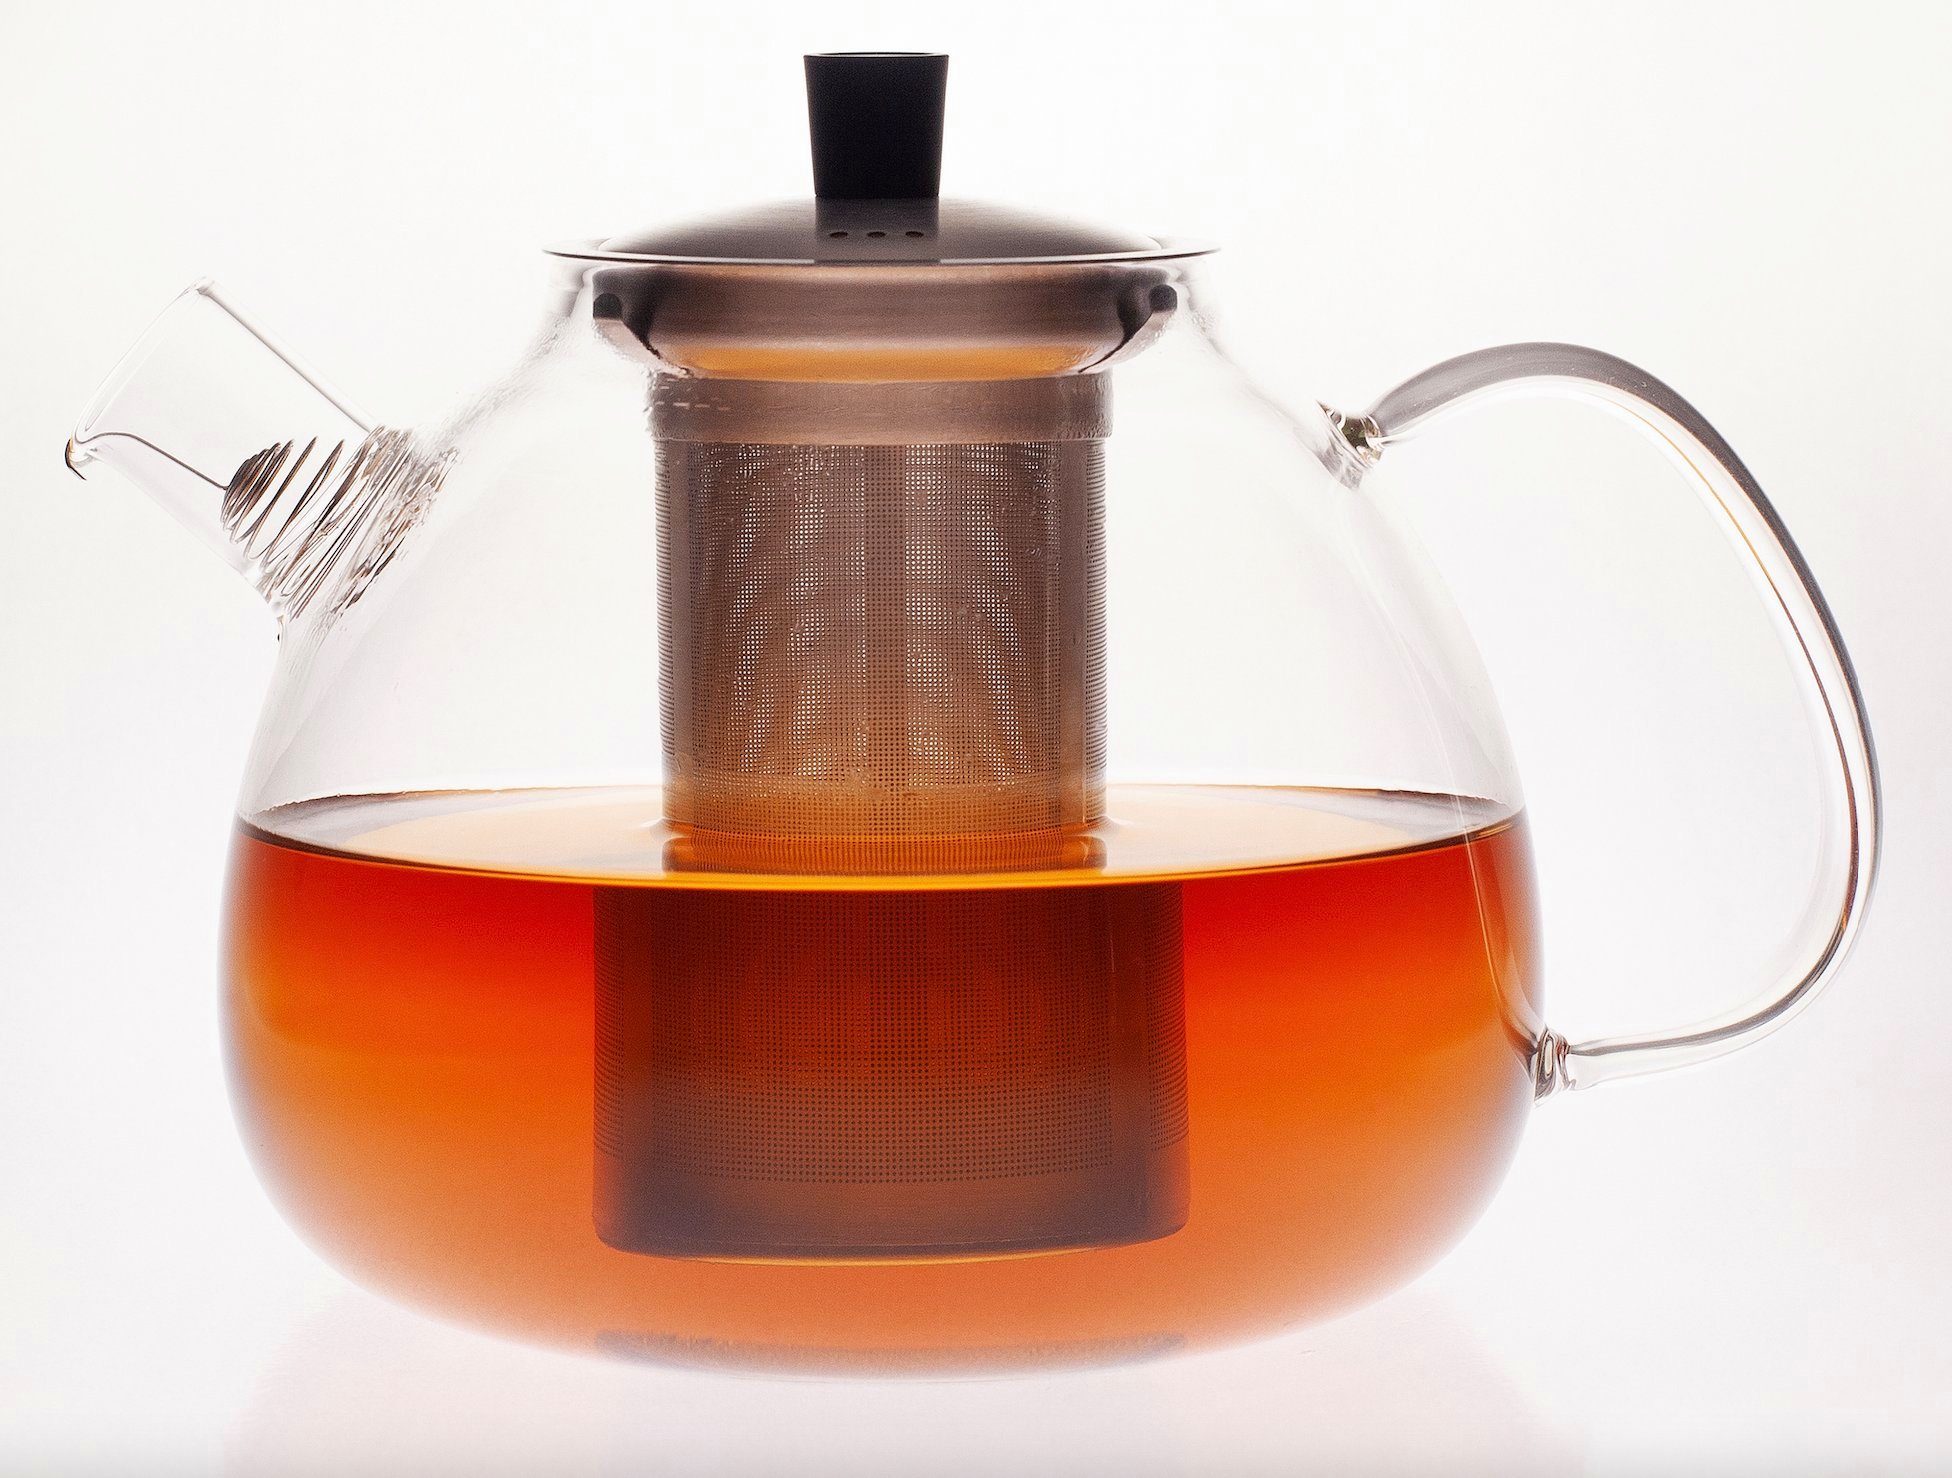 Hanseküche Teekanne Premium und Modernes l, Hochwertig Edelstahl), ml Glas Teebereiter, aus und Ultrafeinfilter Design, inkl. Auffangdraht Teekanne Langlebig 1.5 1500 (Teekanne